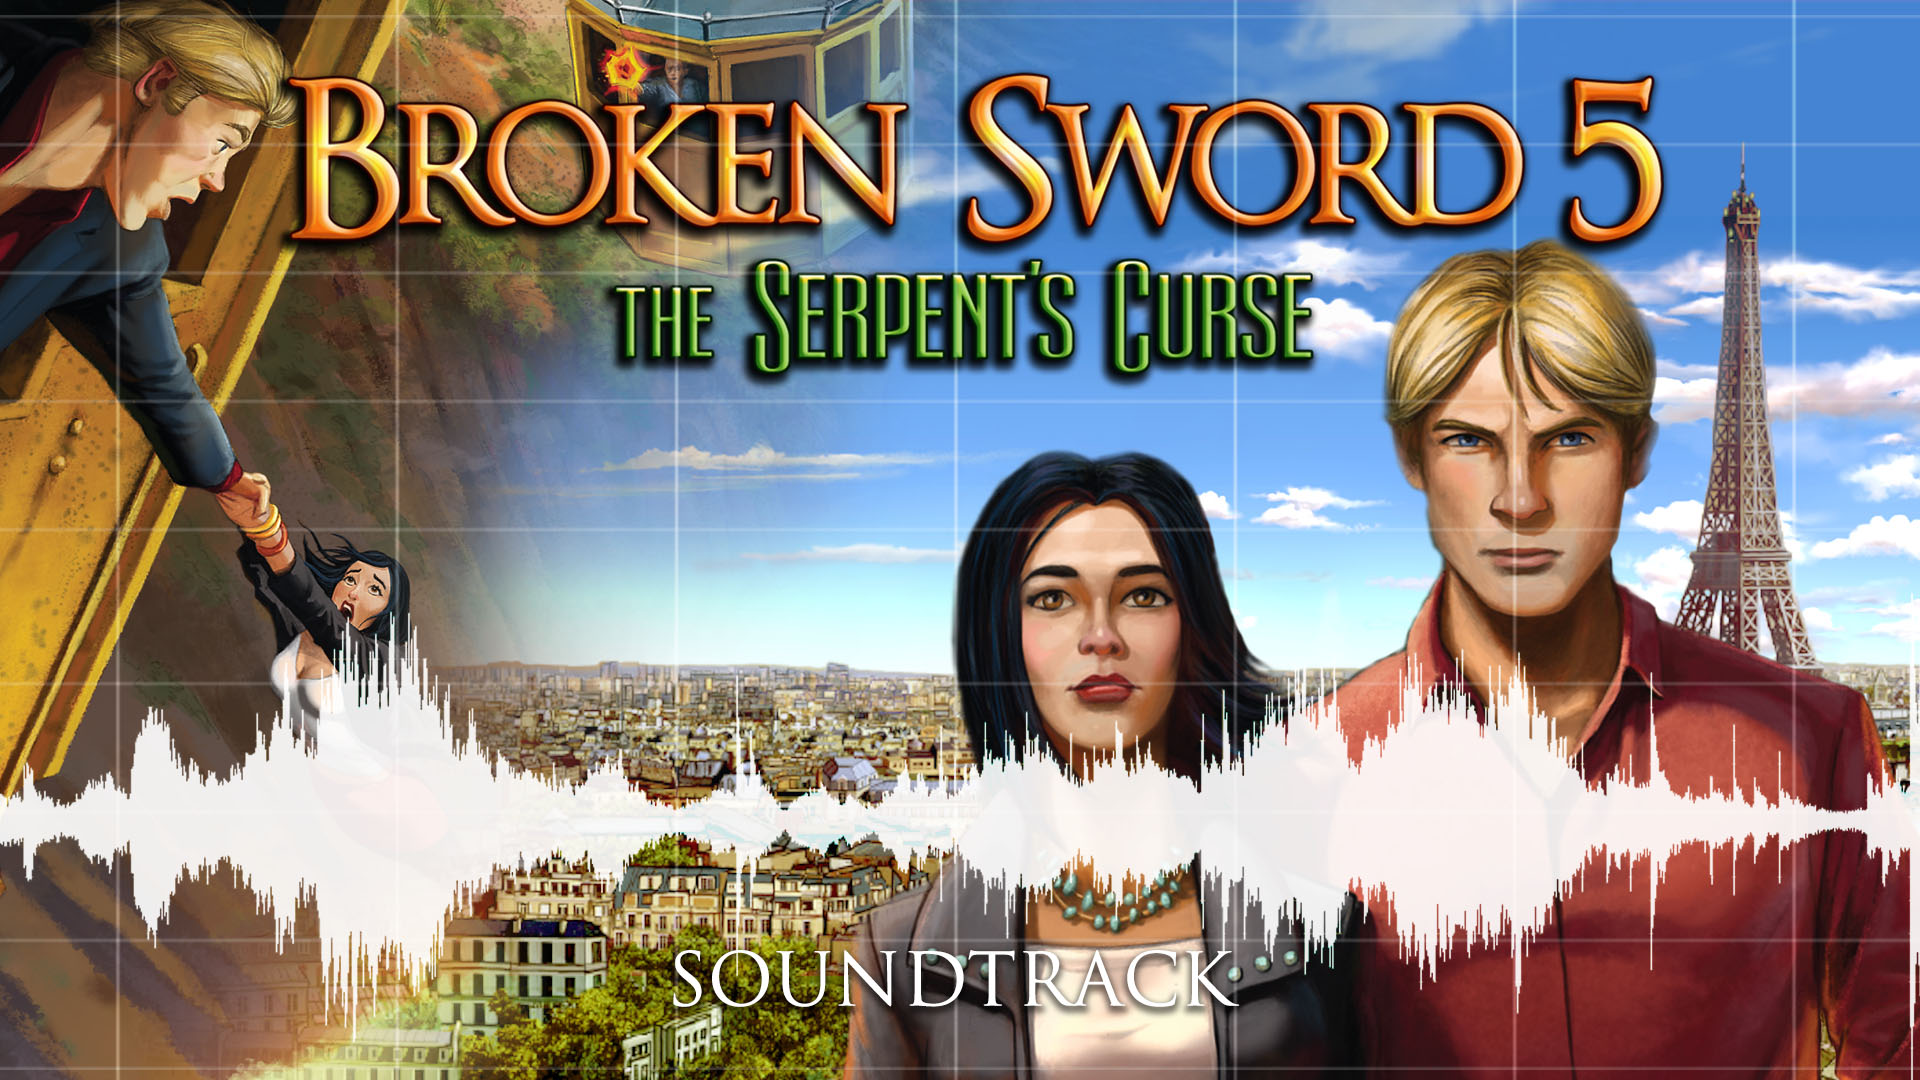 Broken Sword 5: Soundtrack Featured Screenshot #1